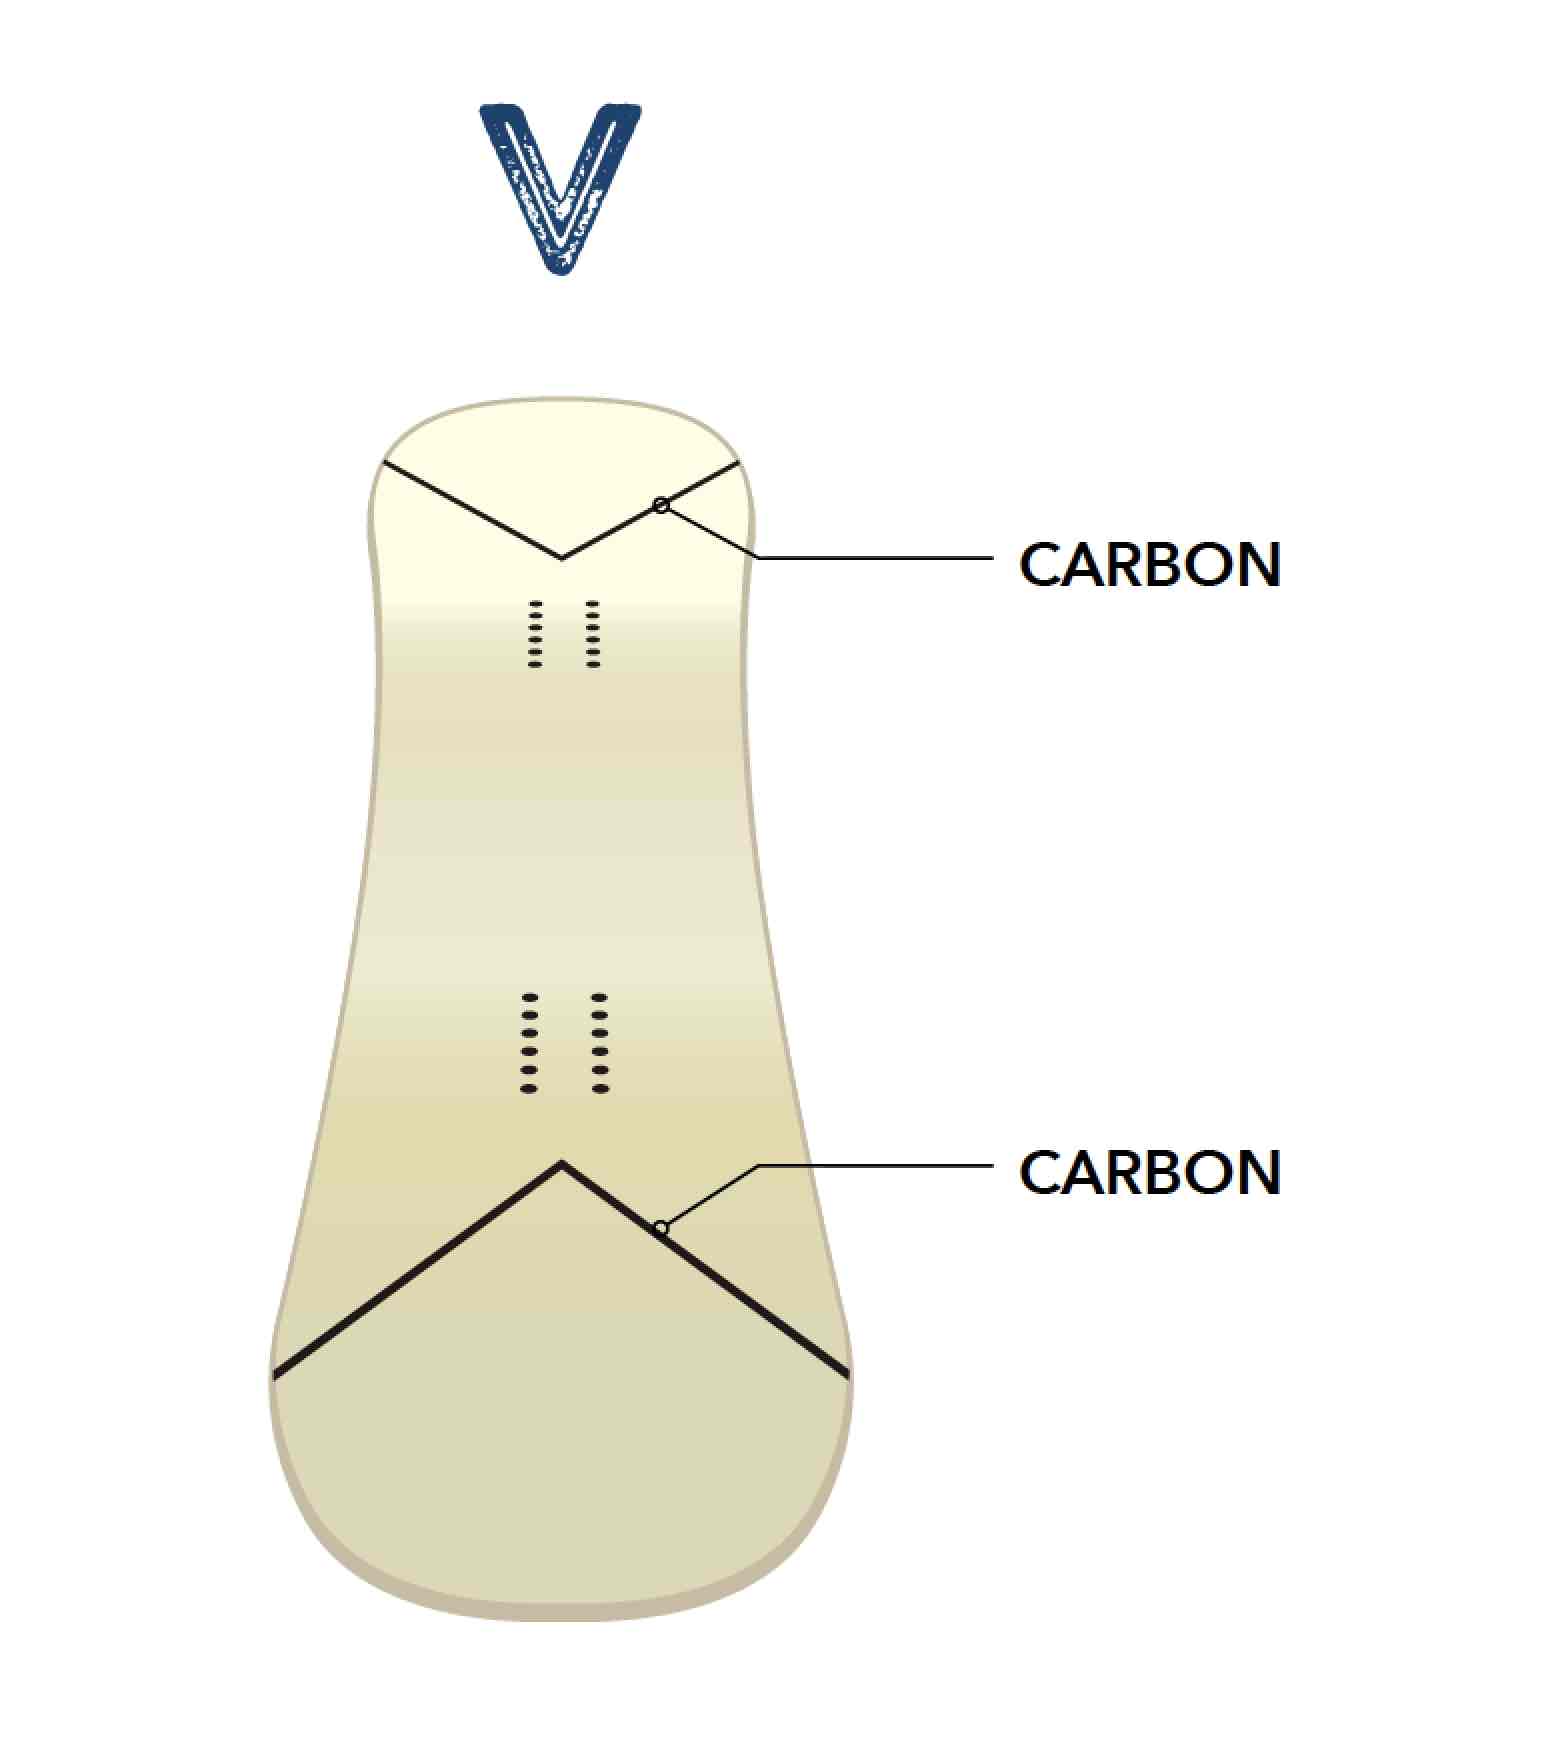 從這張圖中可以看出，V 形碳纖維內置於鼻子和尾部。這是為了支持粘性和排斥性，是使板子柔軟但強大的因素之一。換句話說，它是柔軟的彈性，但它也很強大。